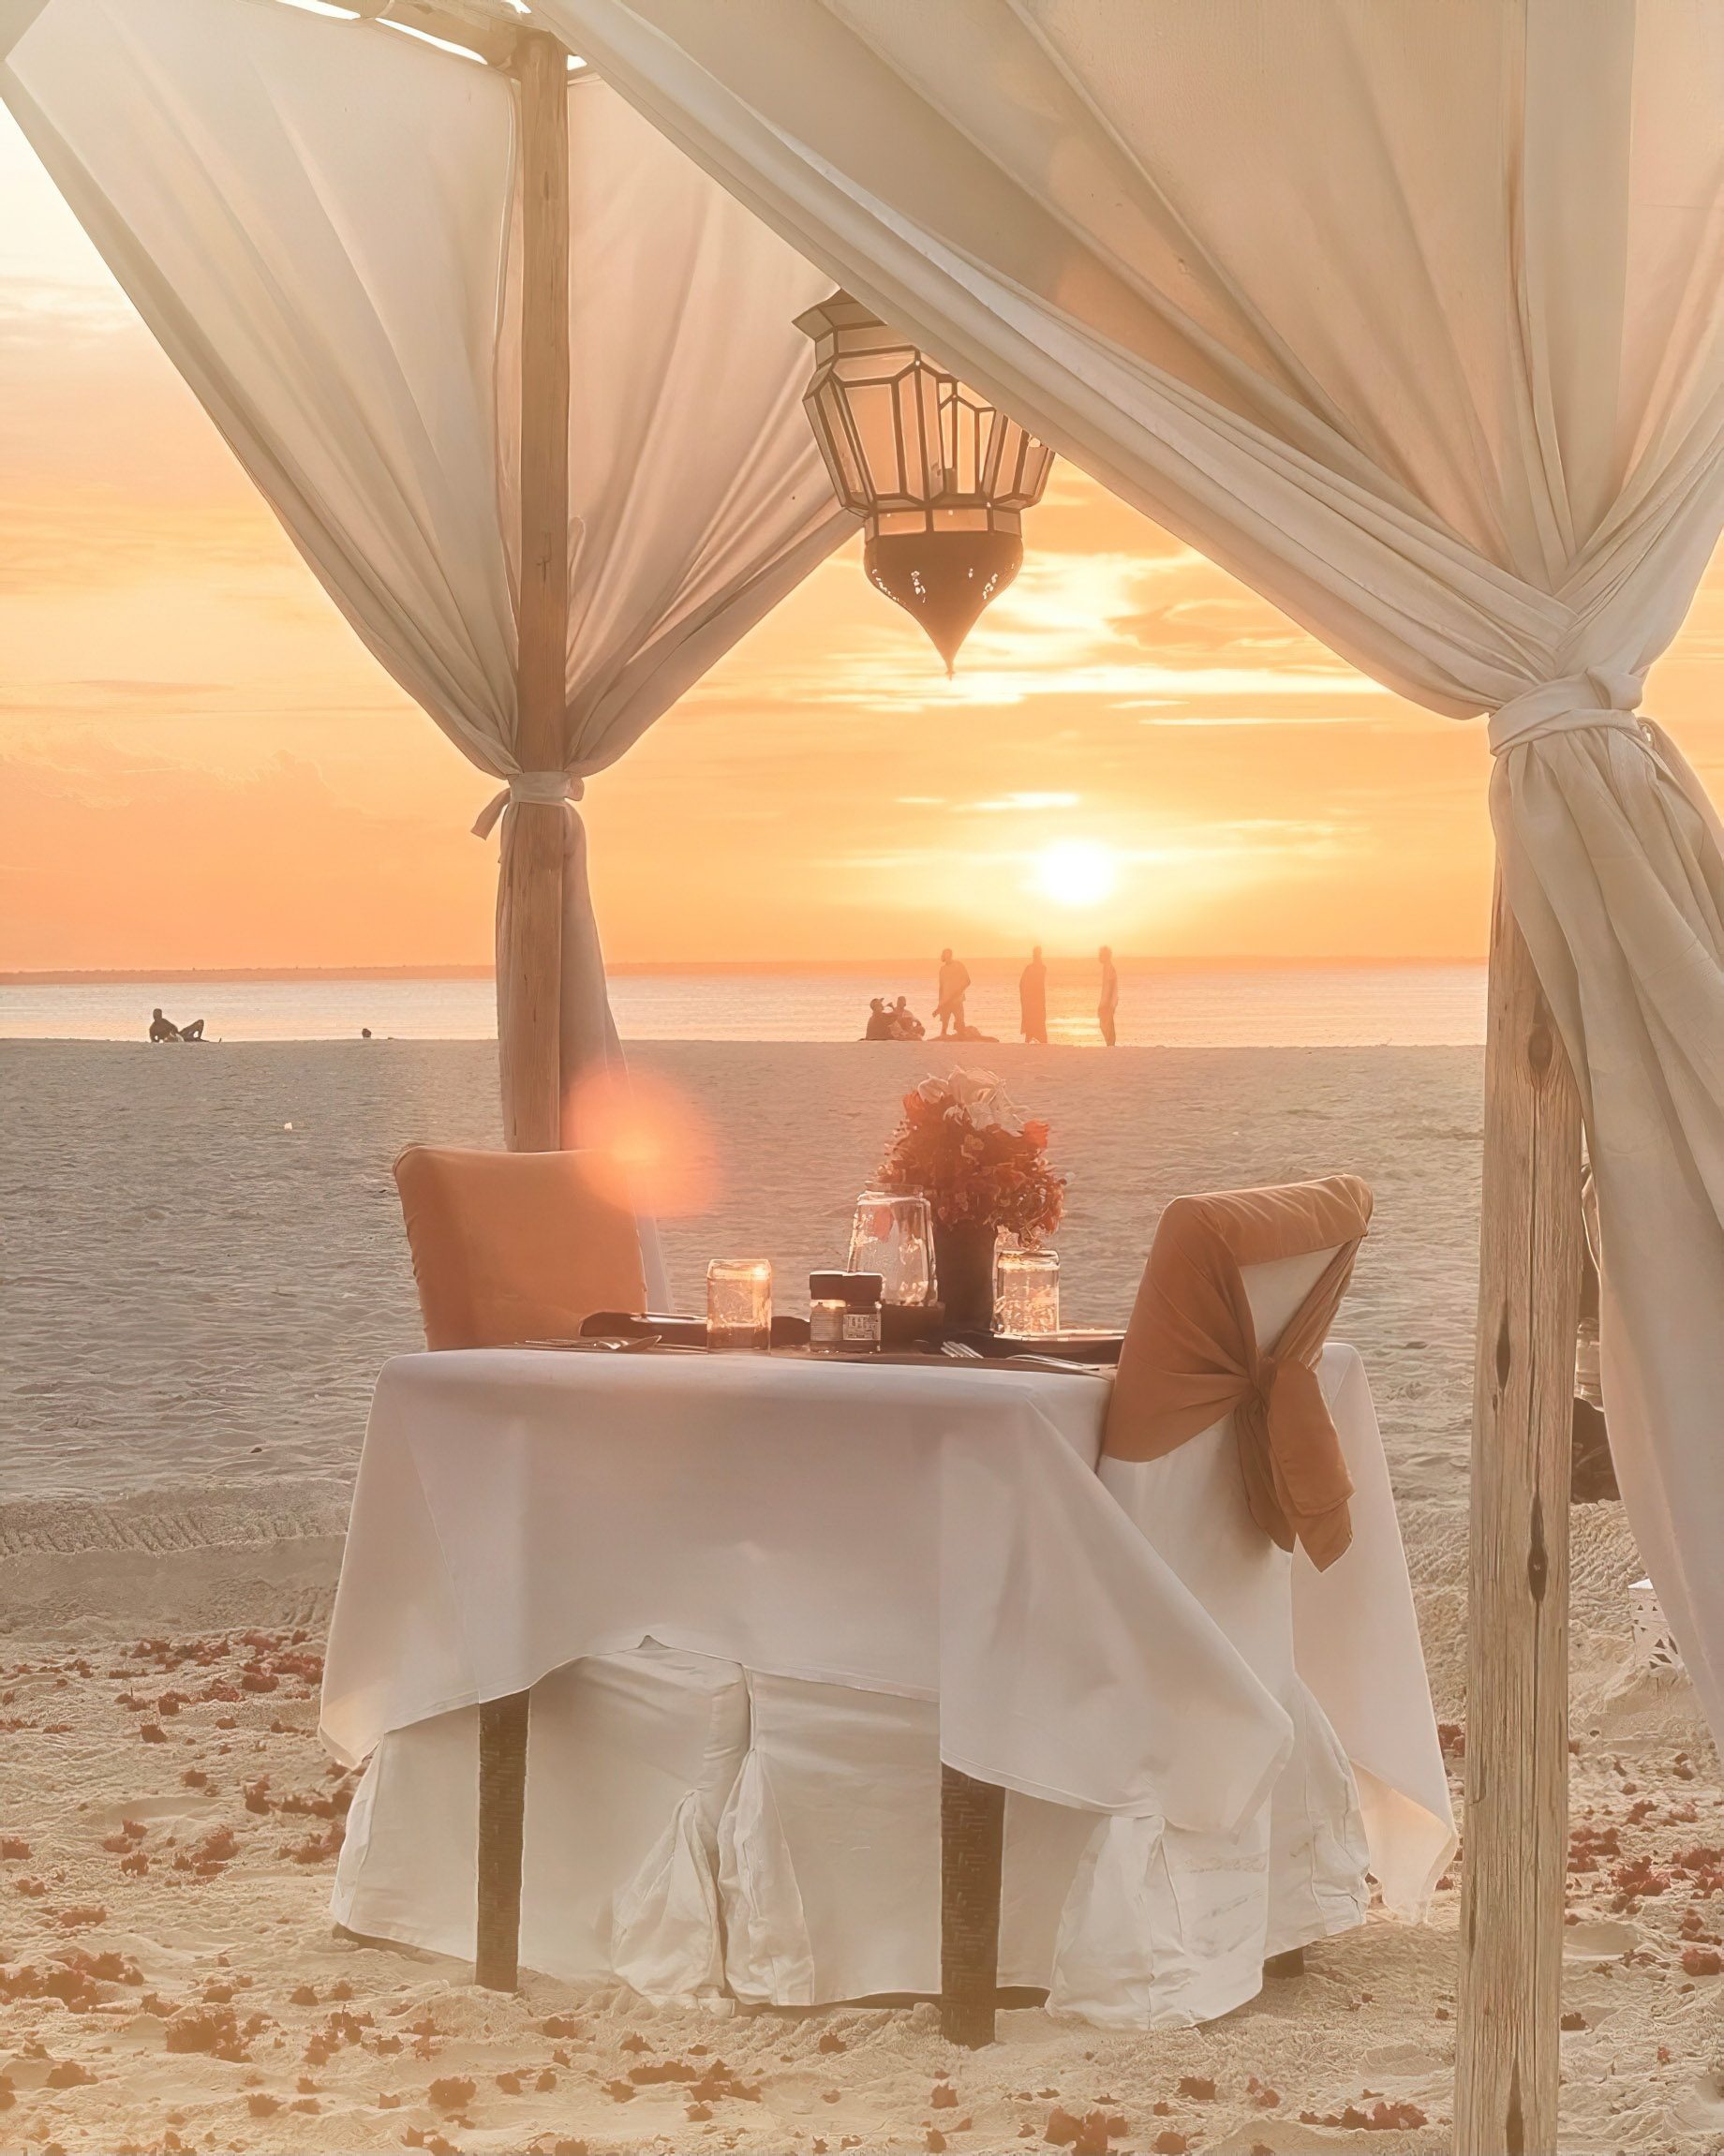 Gold Zanzibar Beach House & Spa Resort – Nungwi, Zanzibar, Tanzania – Beach Cabana Dining Sunset